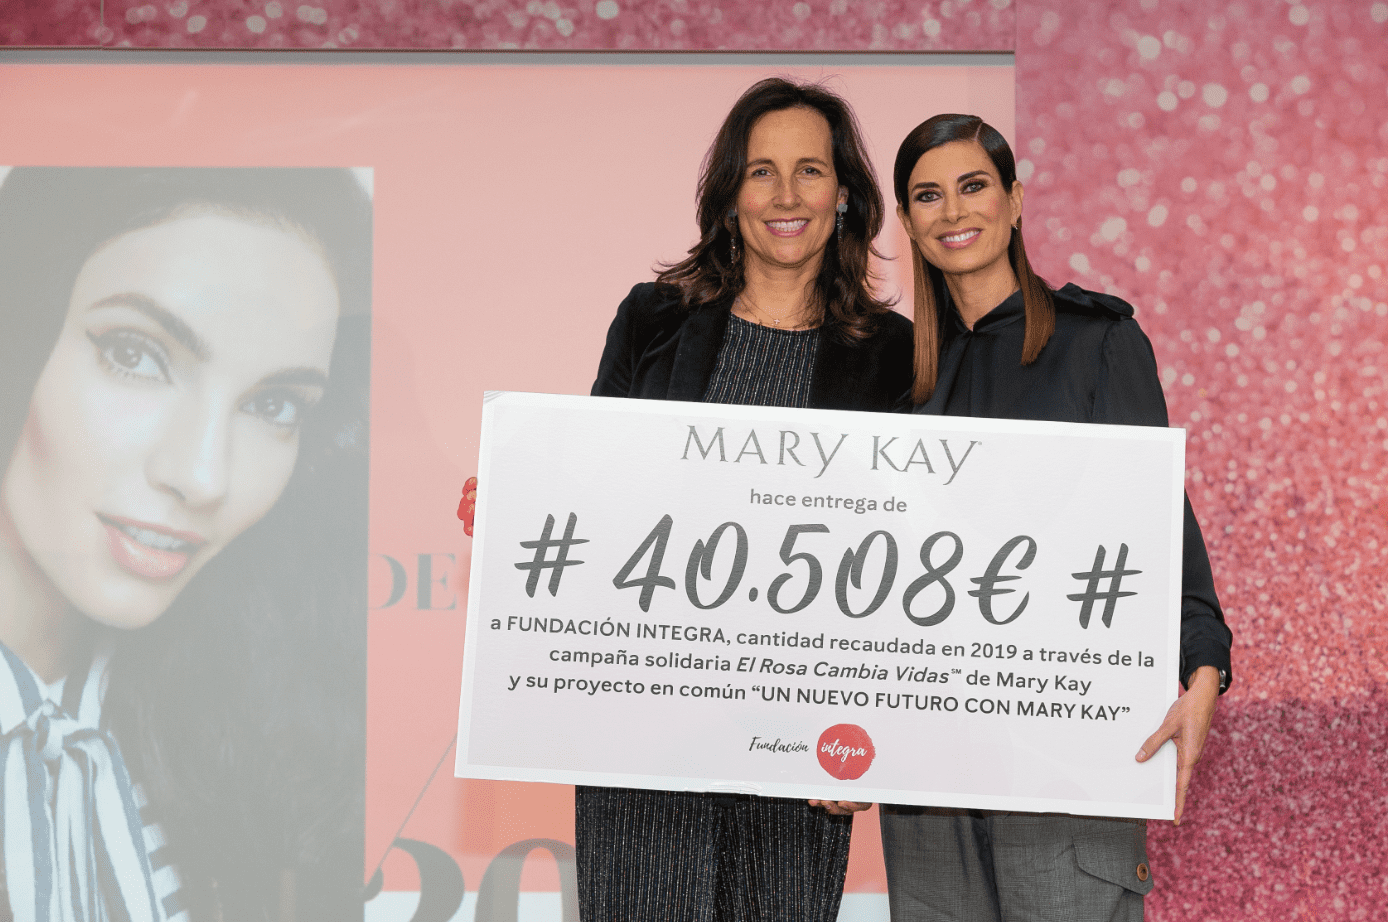 Mary Kay España dona 40.508€ a Fundación Integra, en ayuda a mujeres víctimas de violencia de género